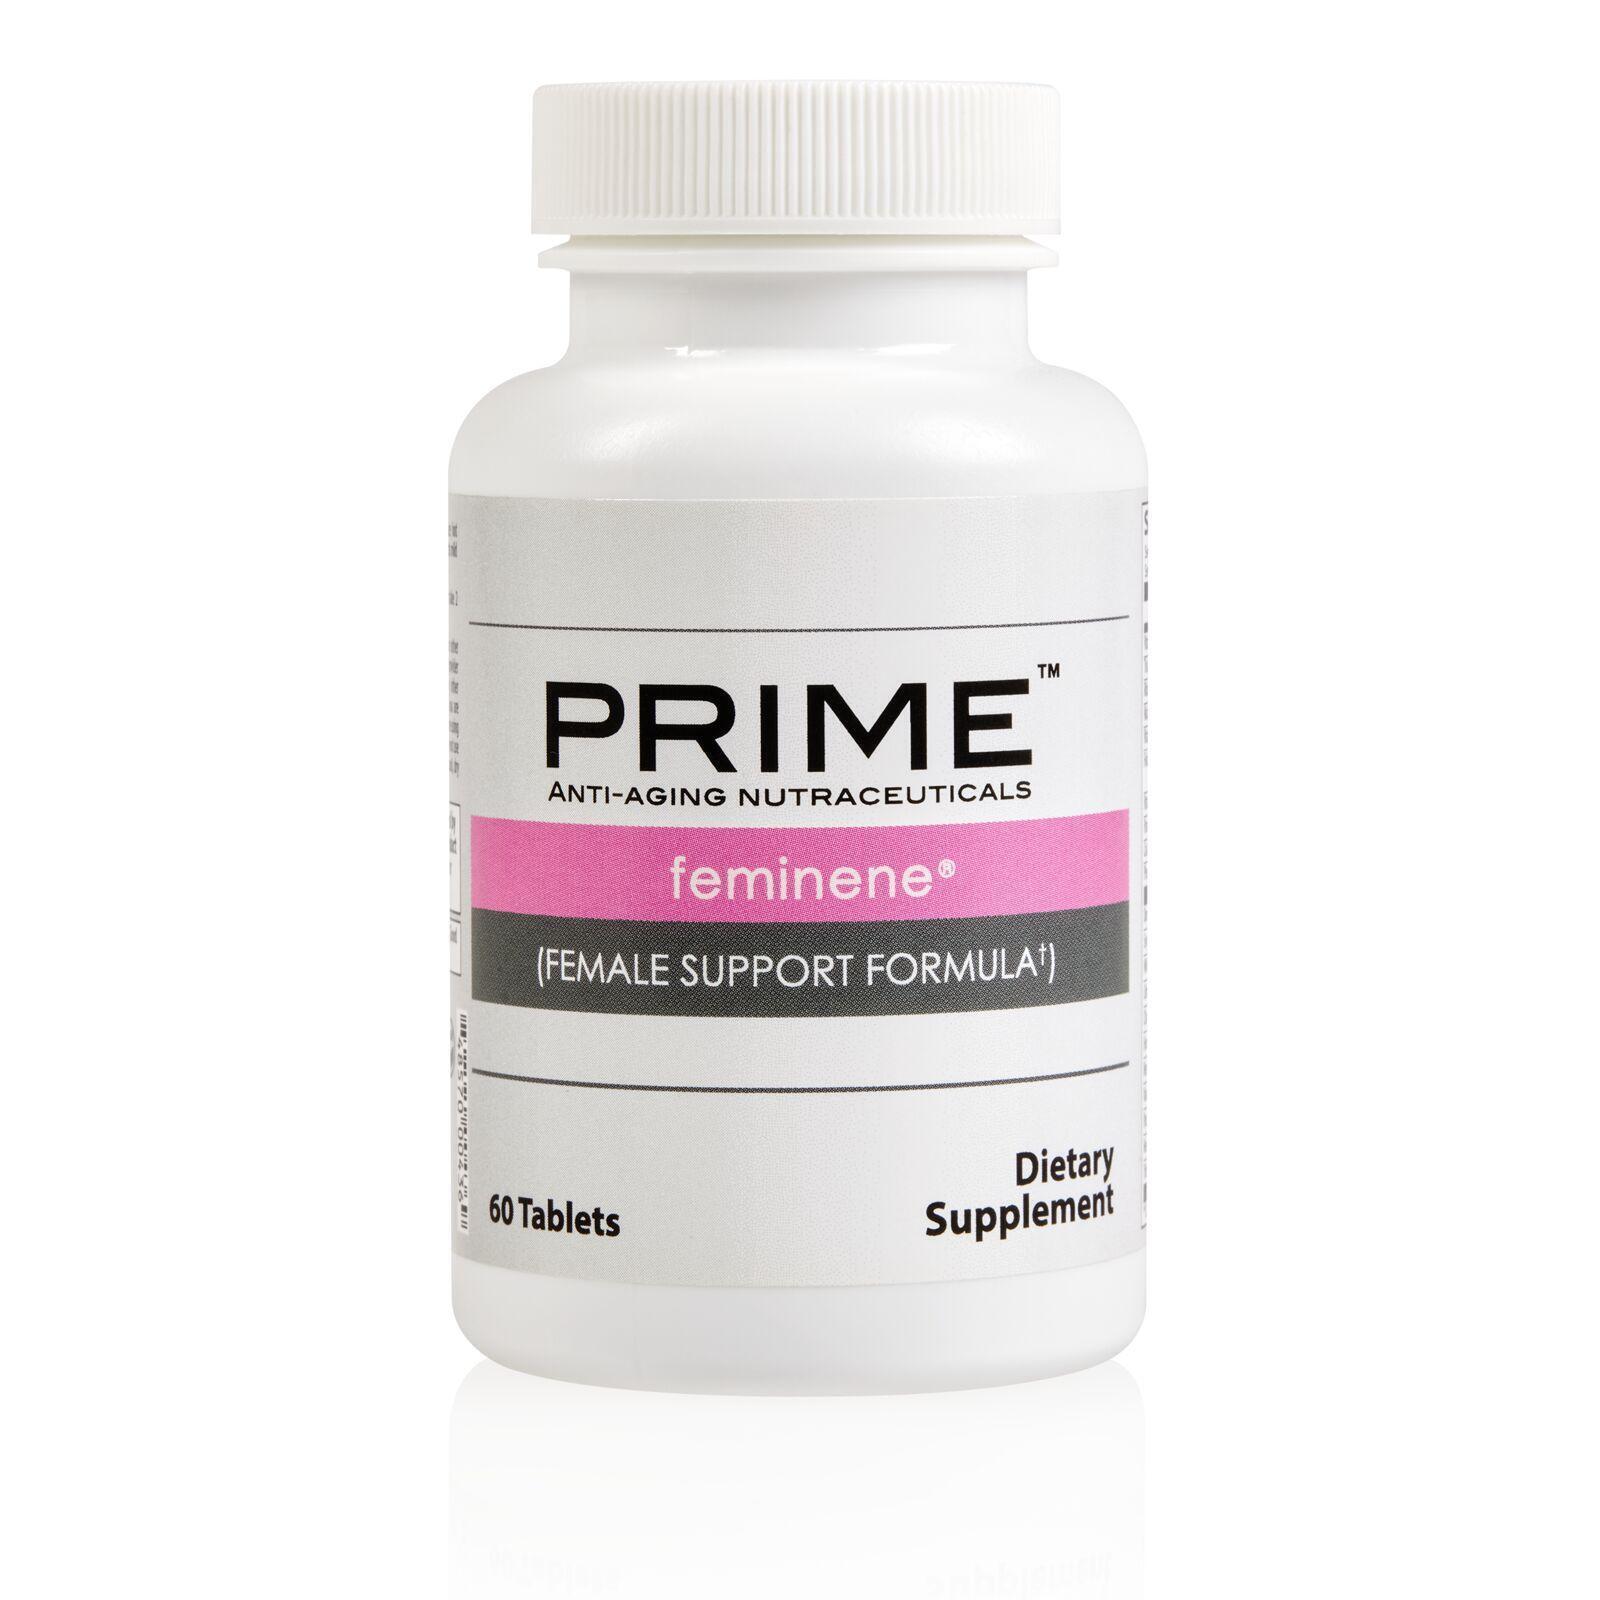 Prime Feminene Female Support Formula,Vegan